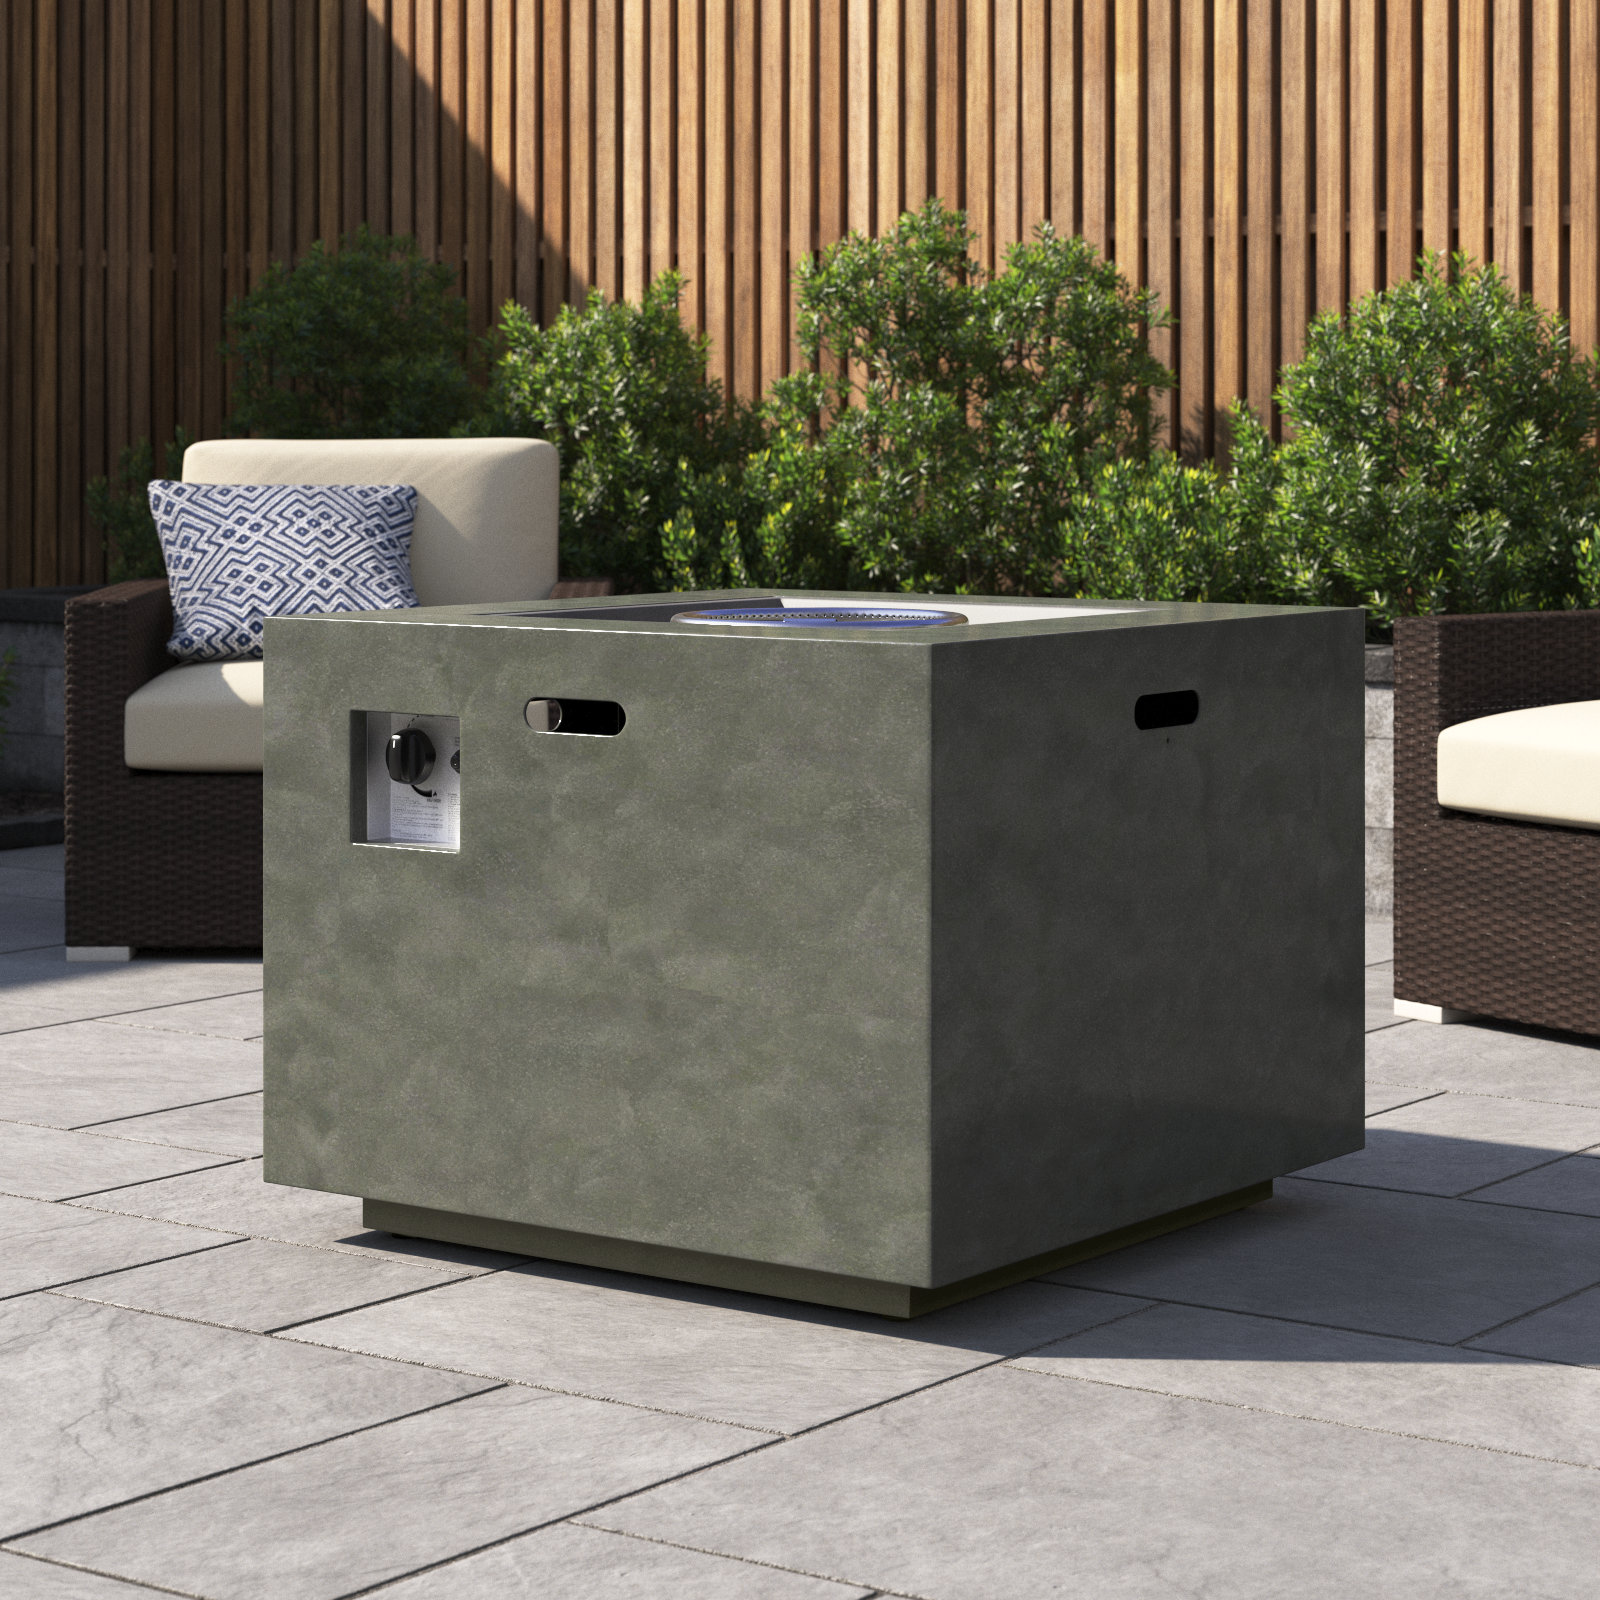 Trent Austin Design® Concrete | Alsacia Fire Propane Outdoor & Table Wayfair Pit Reviews